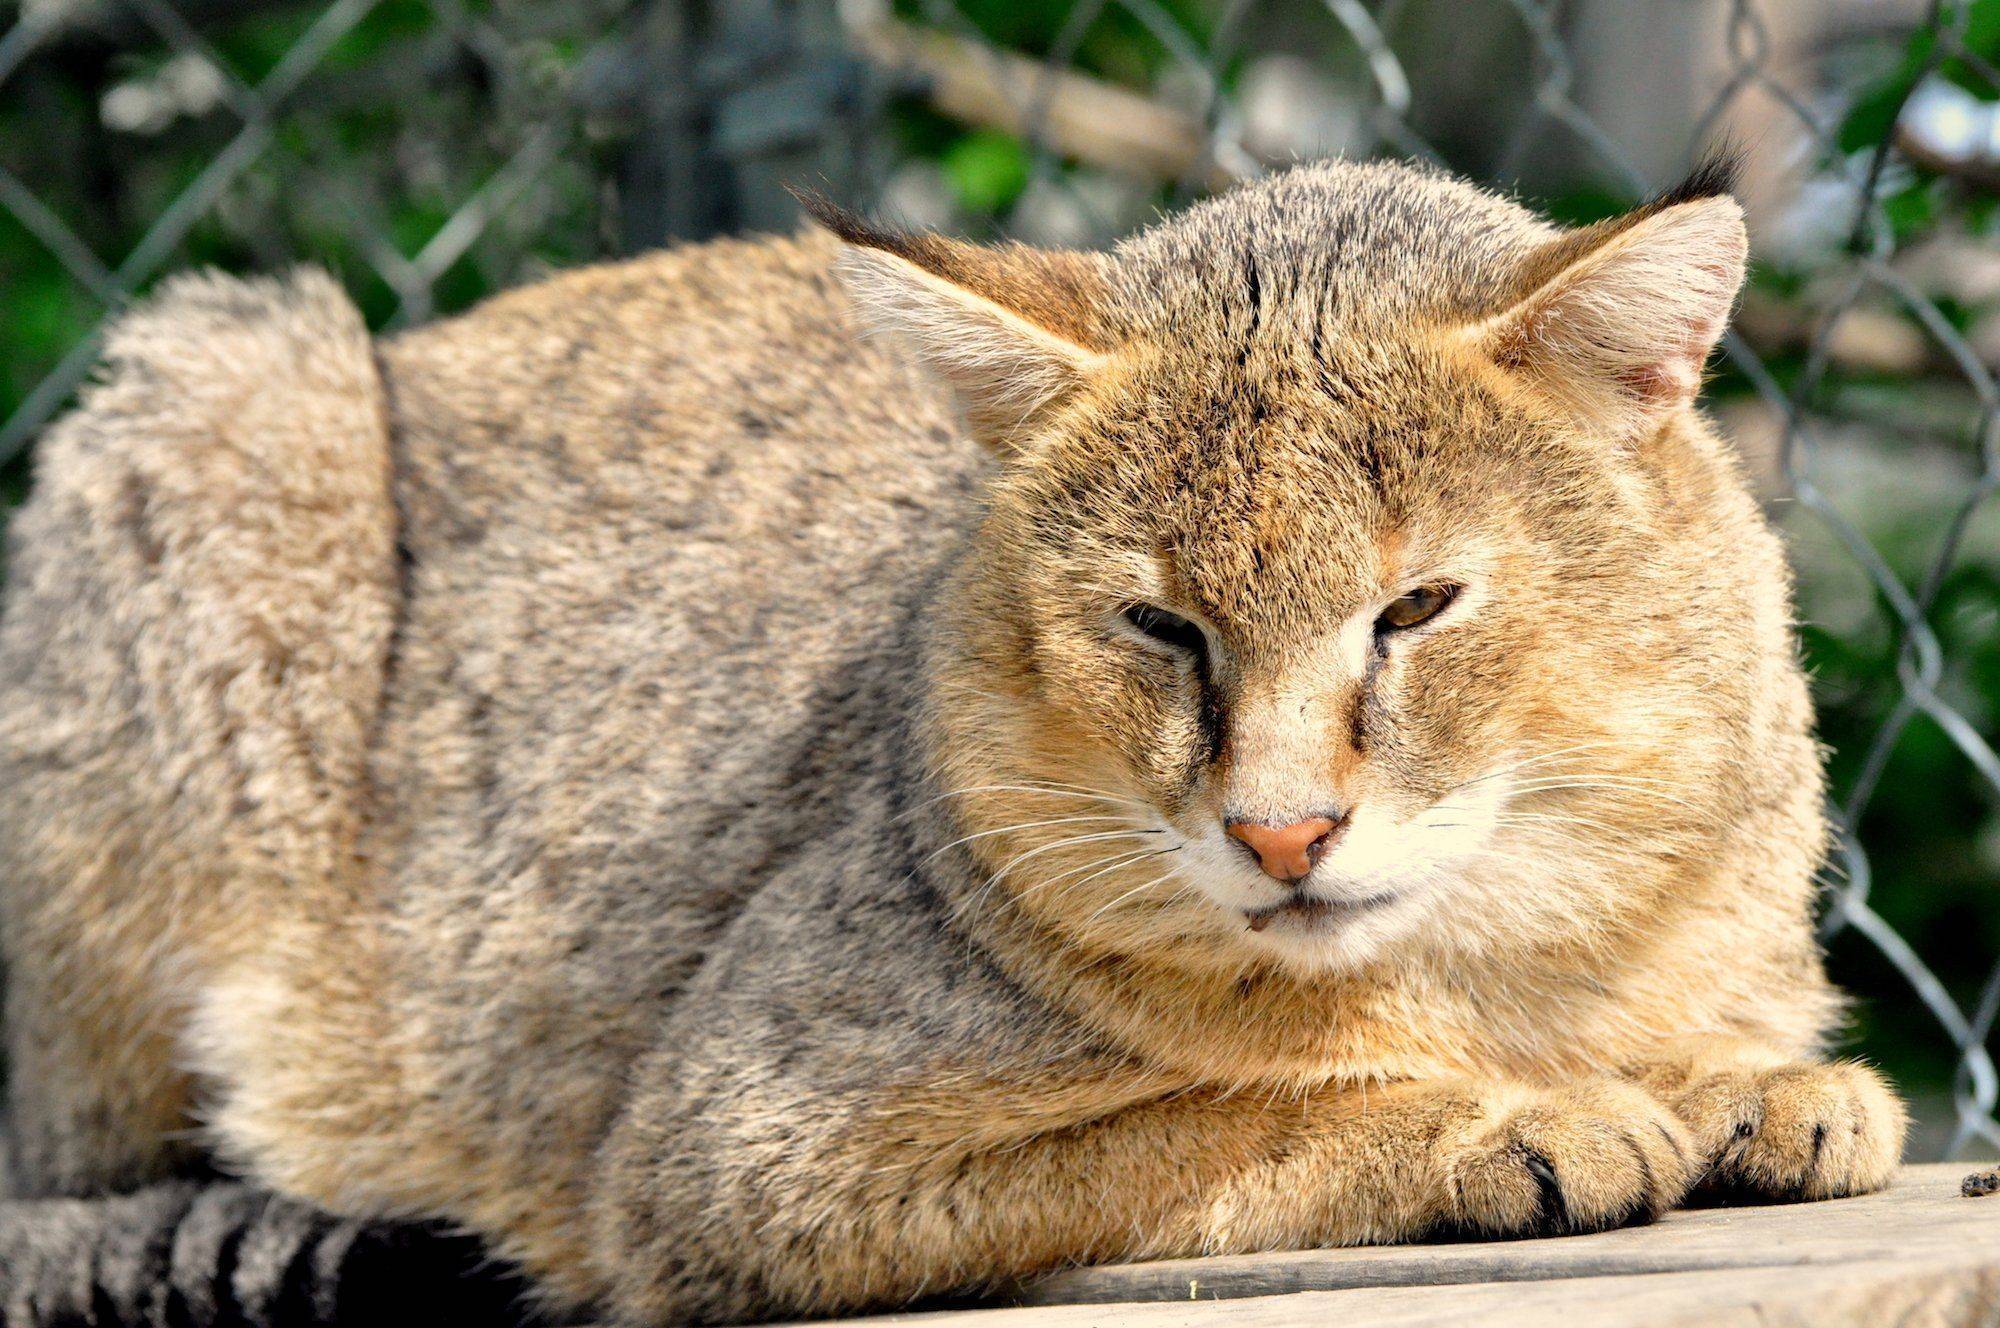 Камышовый кот: варианты названия пород и размеры животного